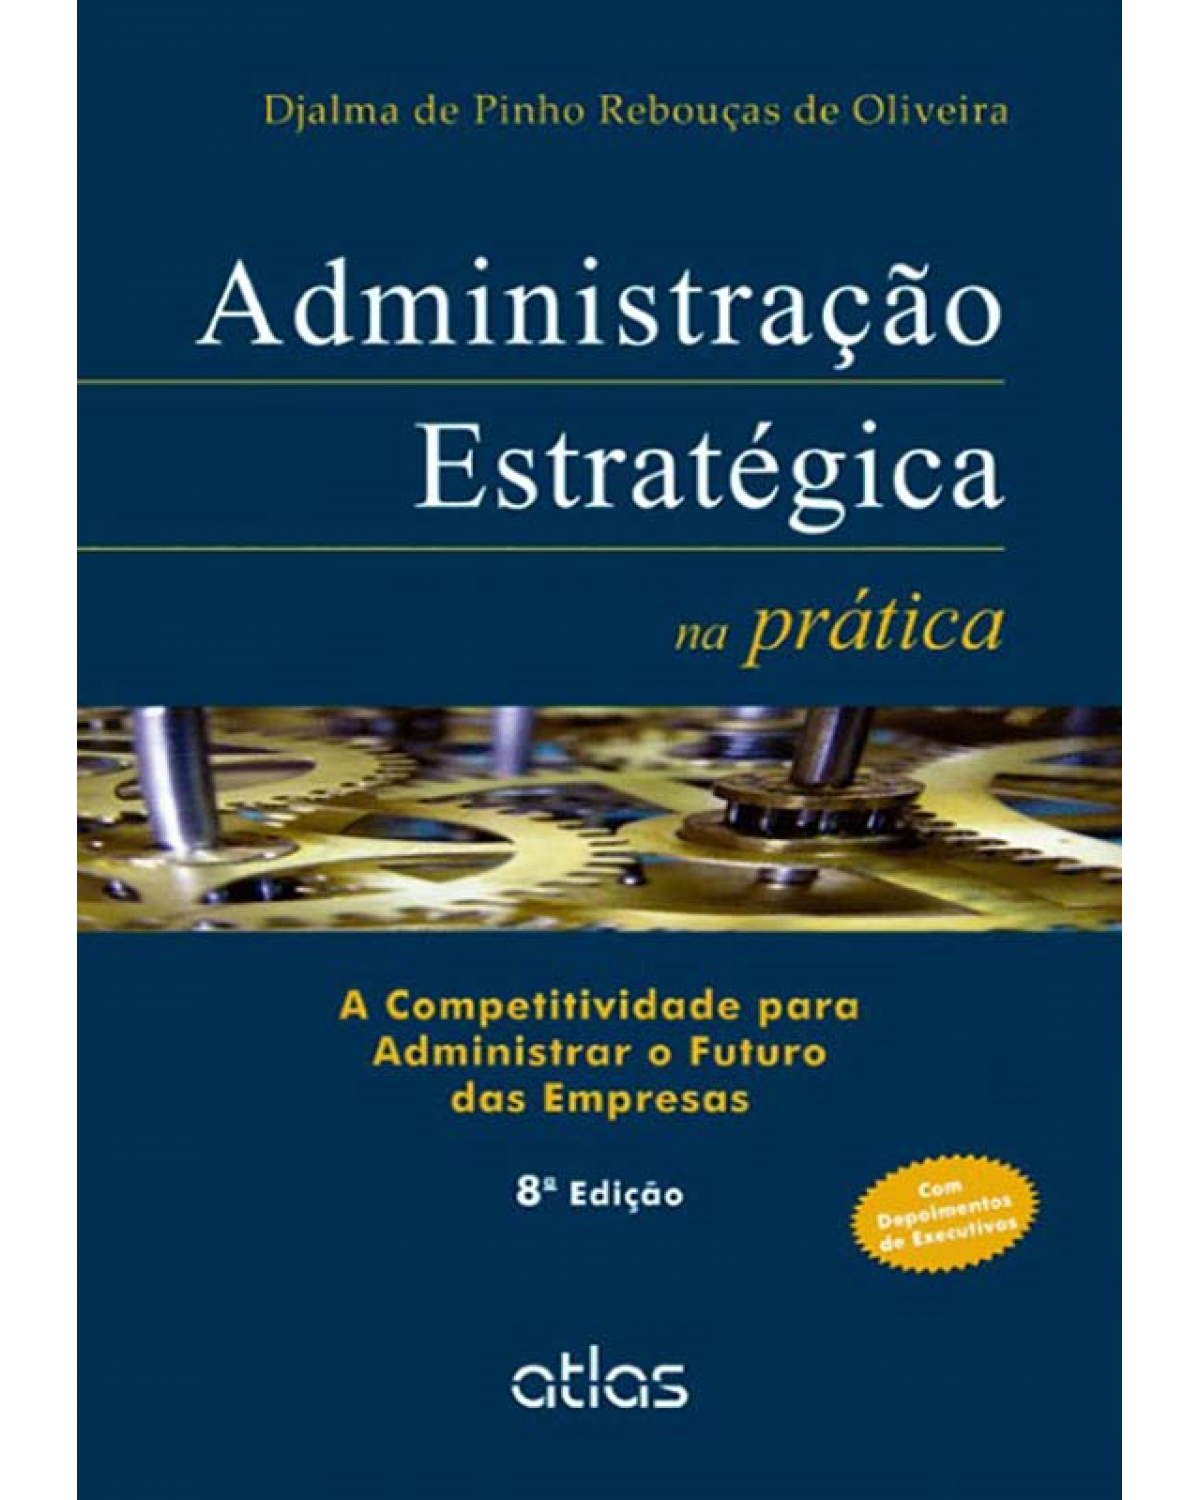 Administração estratégica na prática - A competitividade para administrar o futuro das empresas - 8ª Edição | 2013